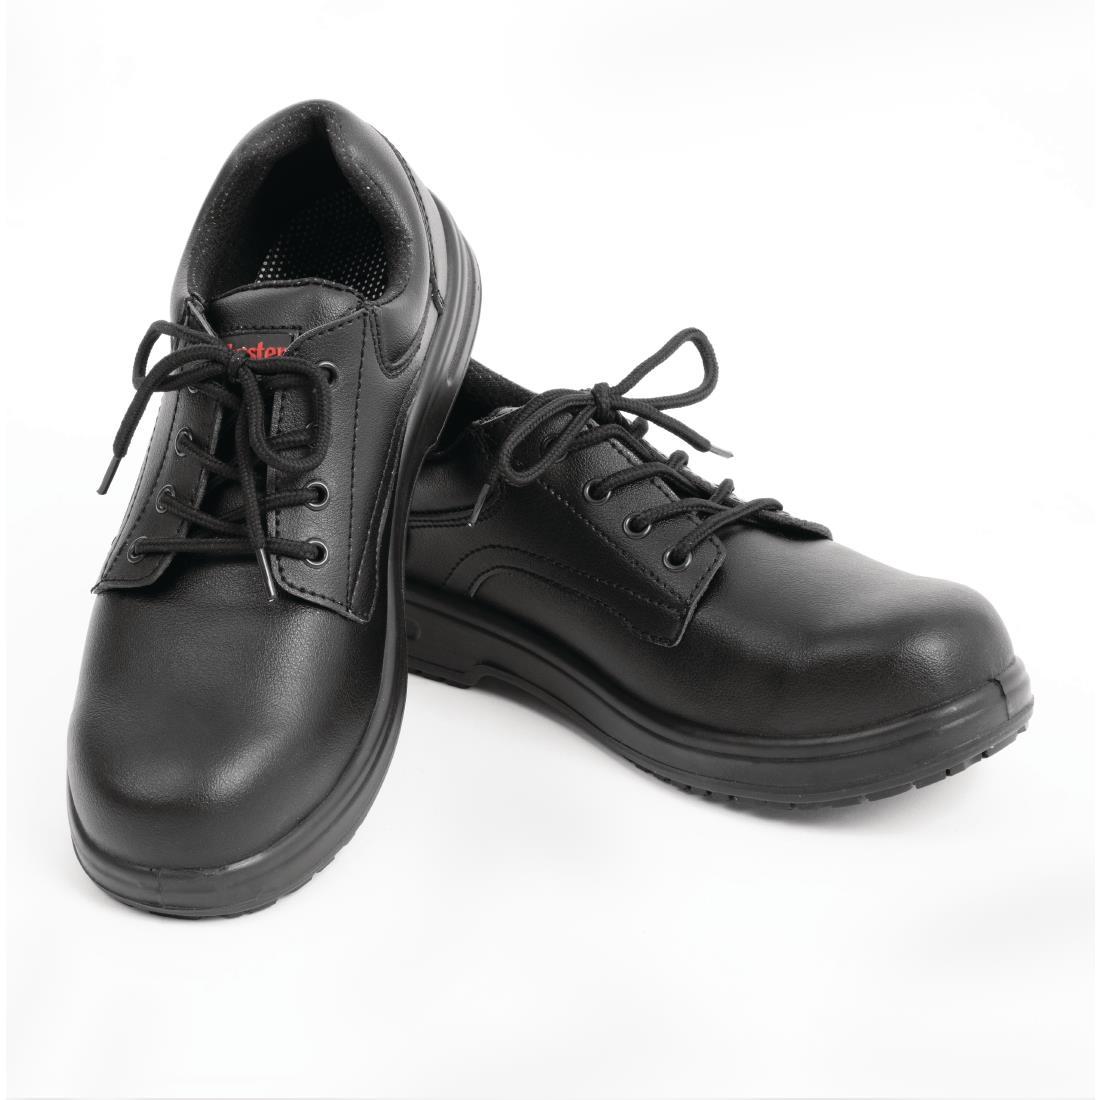 Slipbuster Basic Toe Cap Safety Shoes Black 44 - BB497-44  - 4